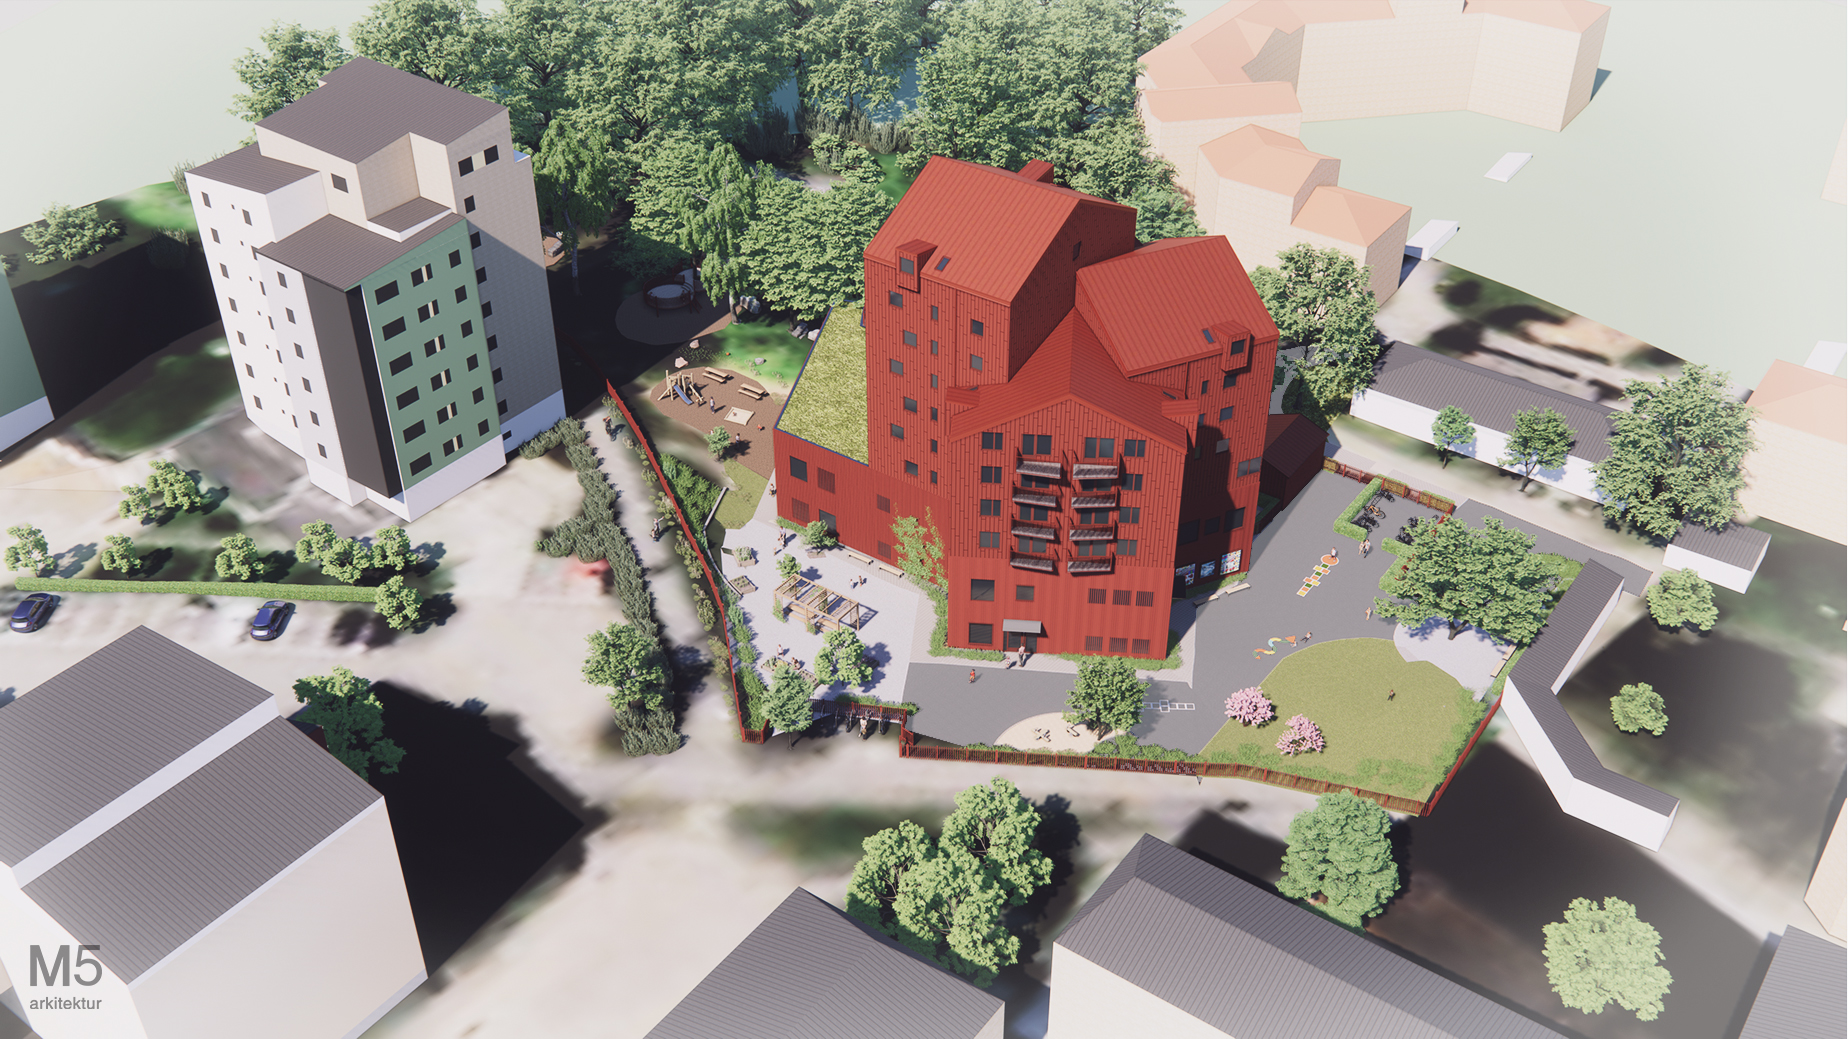 Visionsbild på hur den nya byggnaden kan se ut. Rött trähus i varierande höjd. Huset ligger intill andra flerbostadshus och grönska. I förgrunden syns en förskolegård.